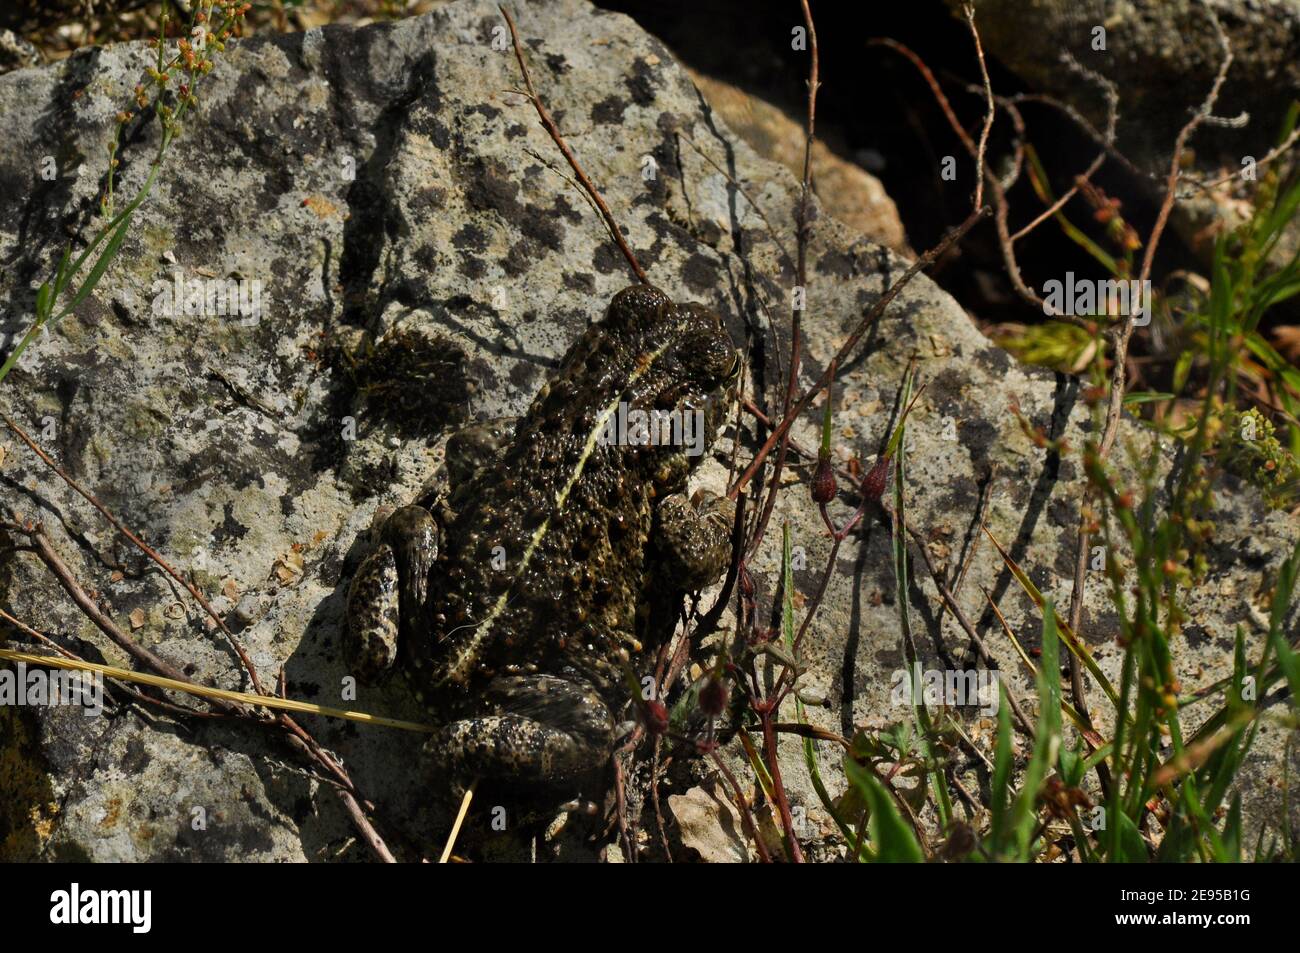 Natterjack Toad, Epidalea calamita,with distinctive marking, New Forest, Hampshire,UK Stock Photo